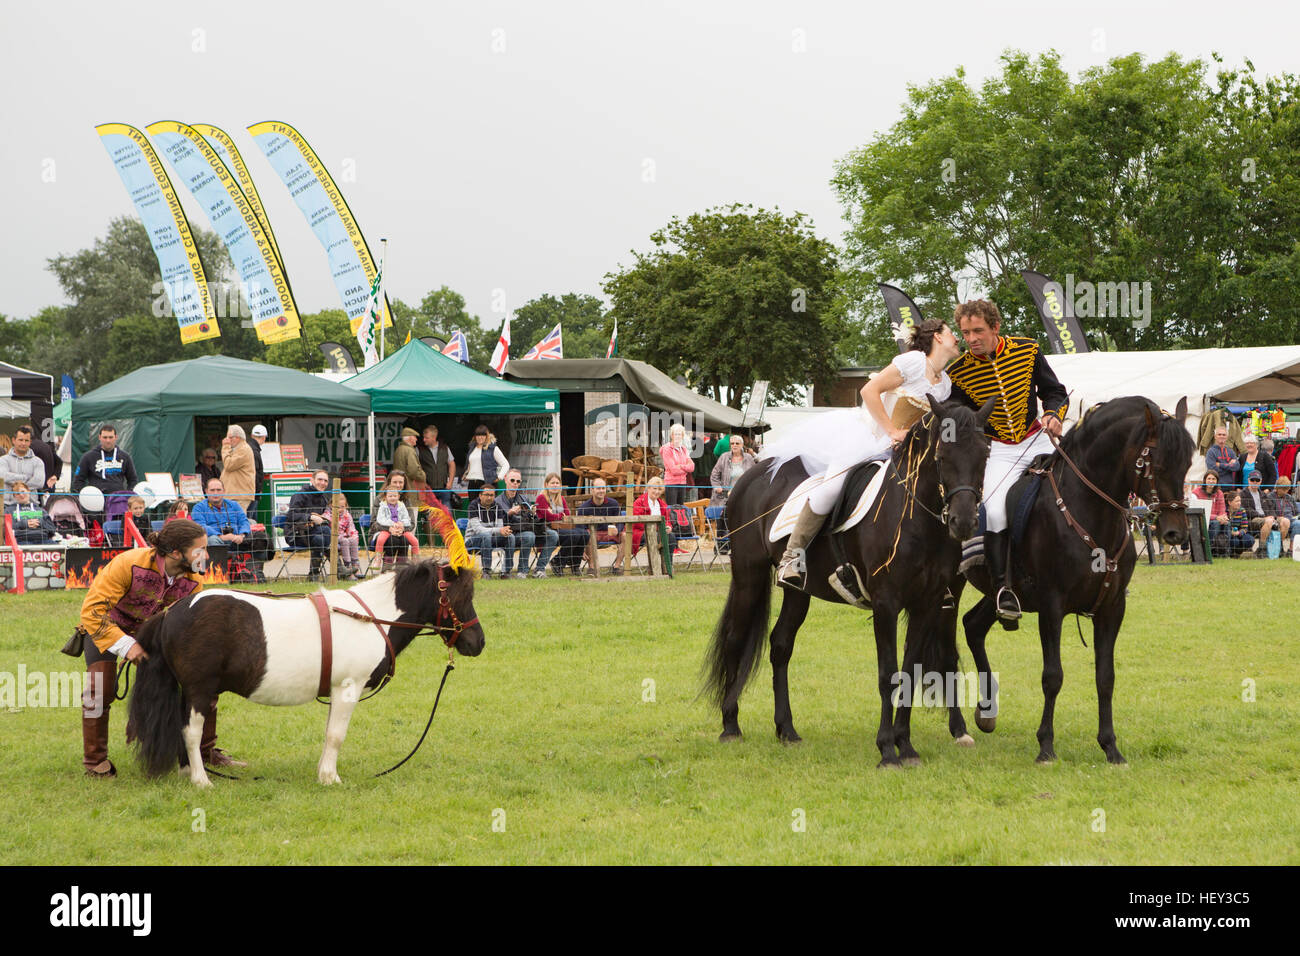 Un homme et des femmes en costume monter à cheval lors d'une exposition à l'événement les trois comtés show, Malvern, Worcestershire, Angleterre. Banque D'Images